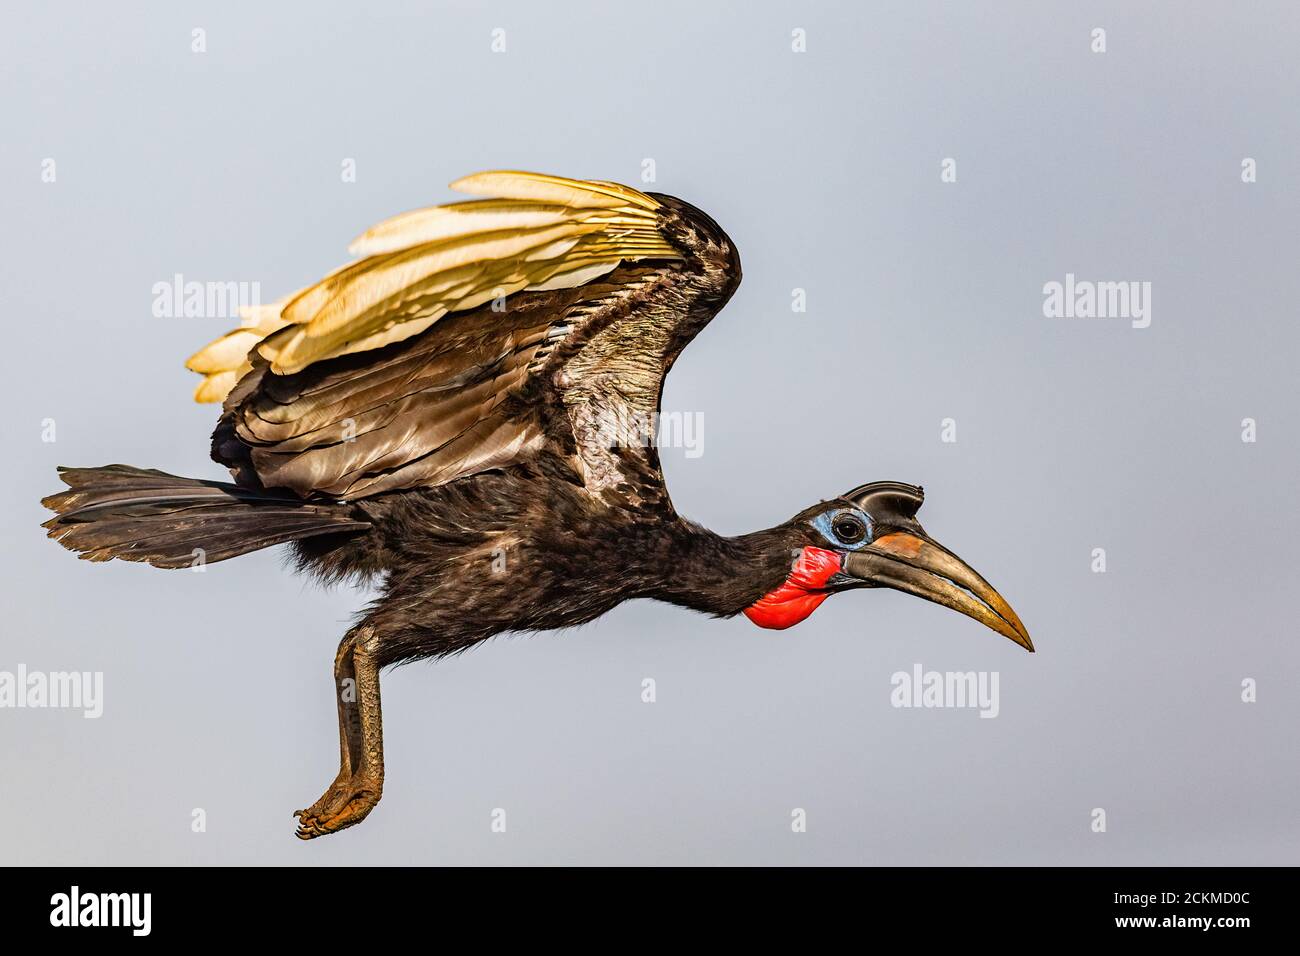 Abyssinian ground hornbill in flight Stock Photo